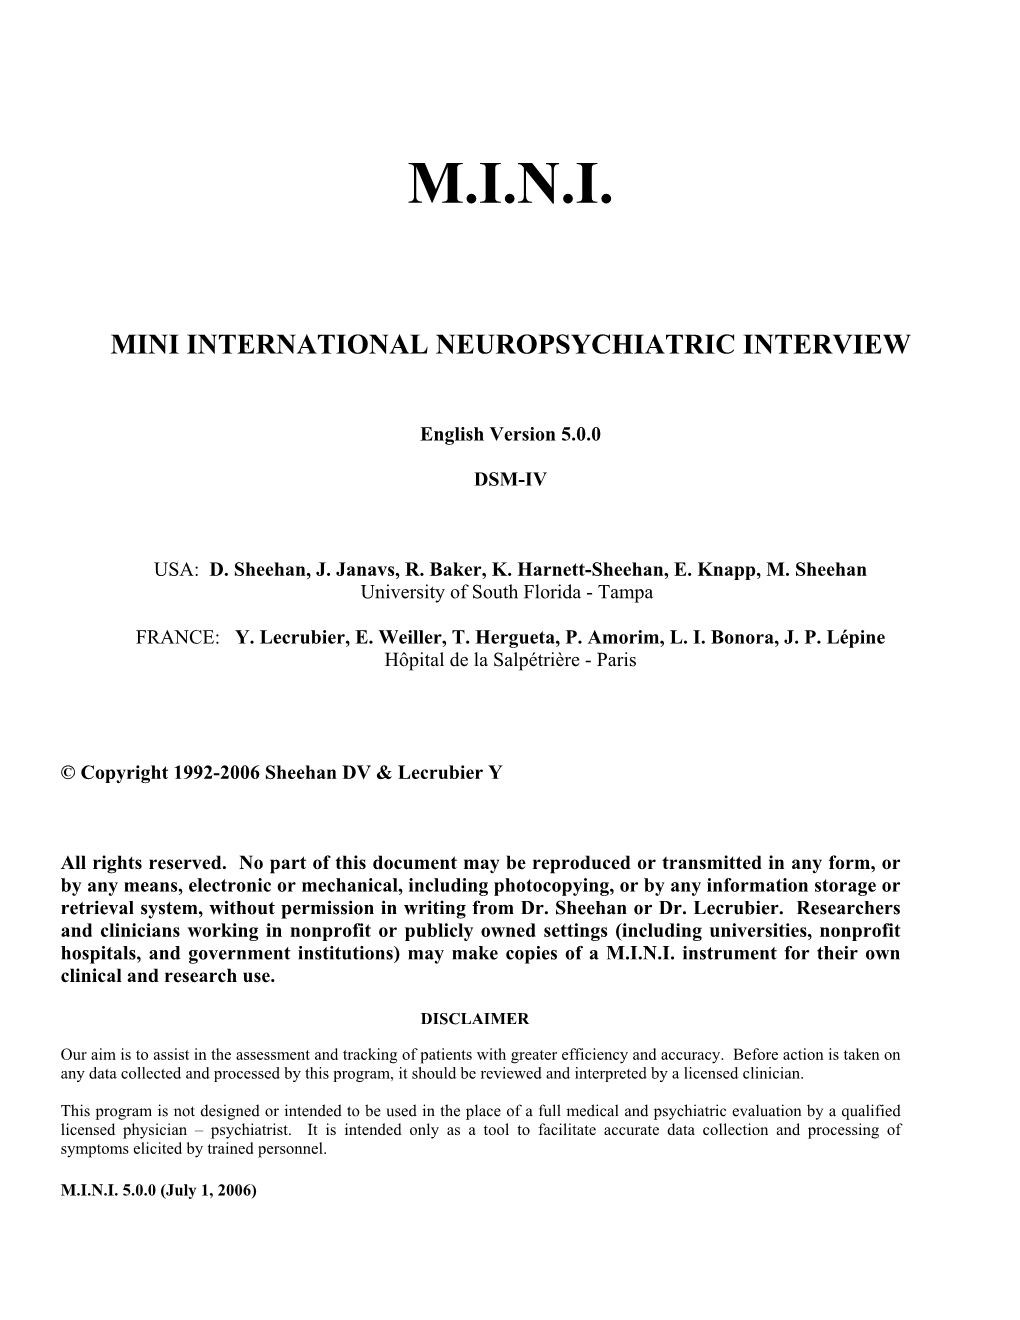 Mini Mini International Neuropsychiatric Interview